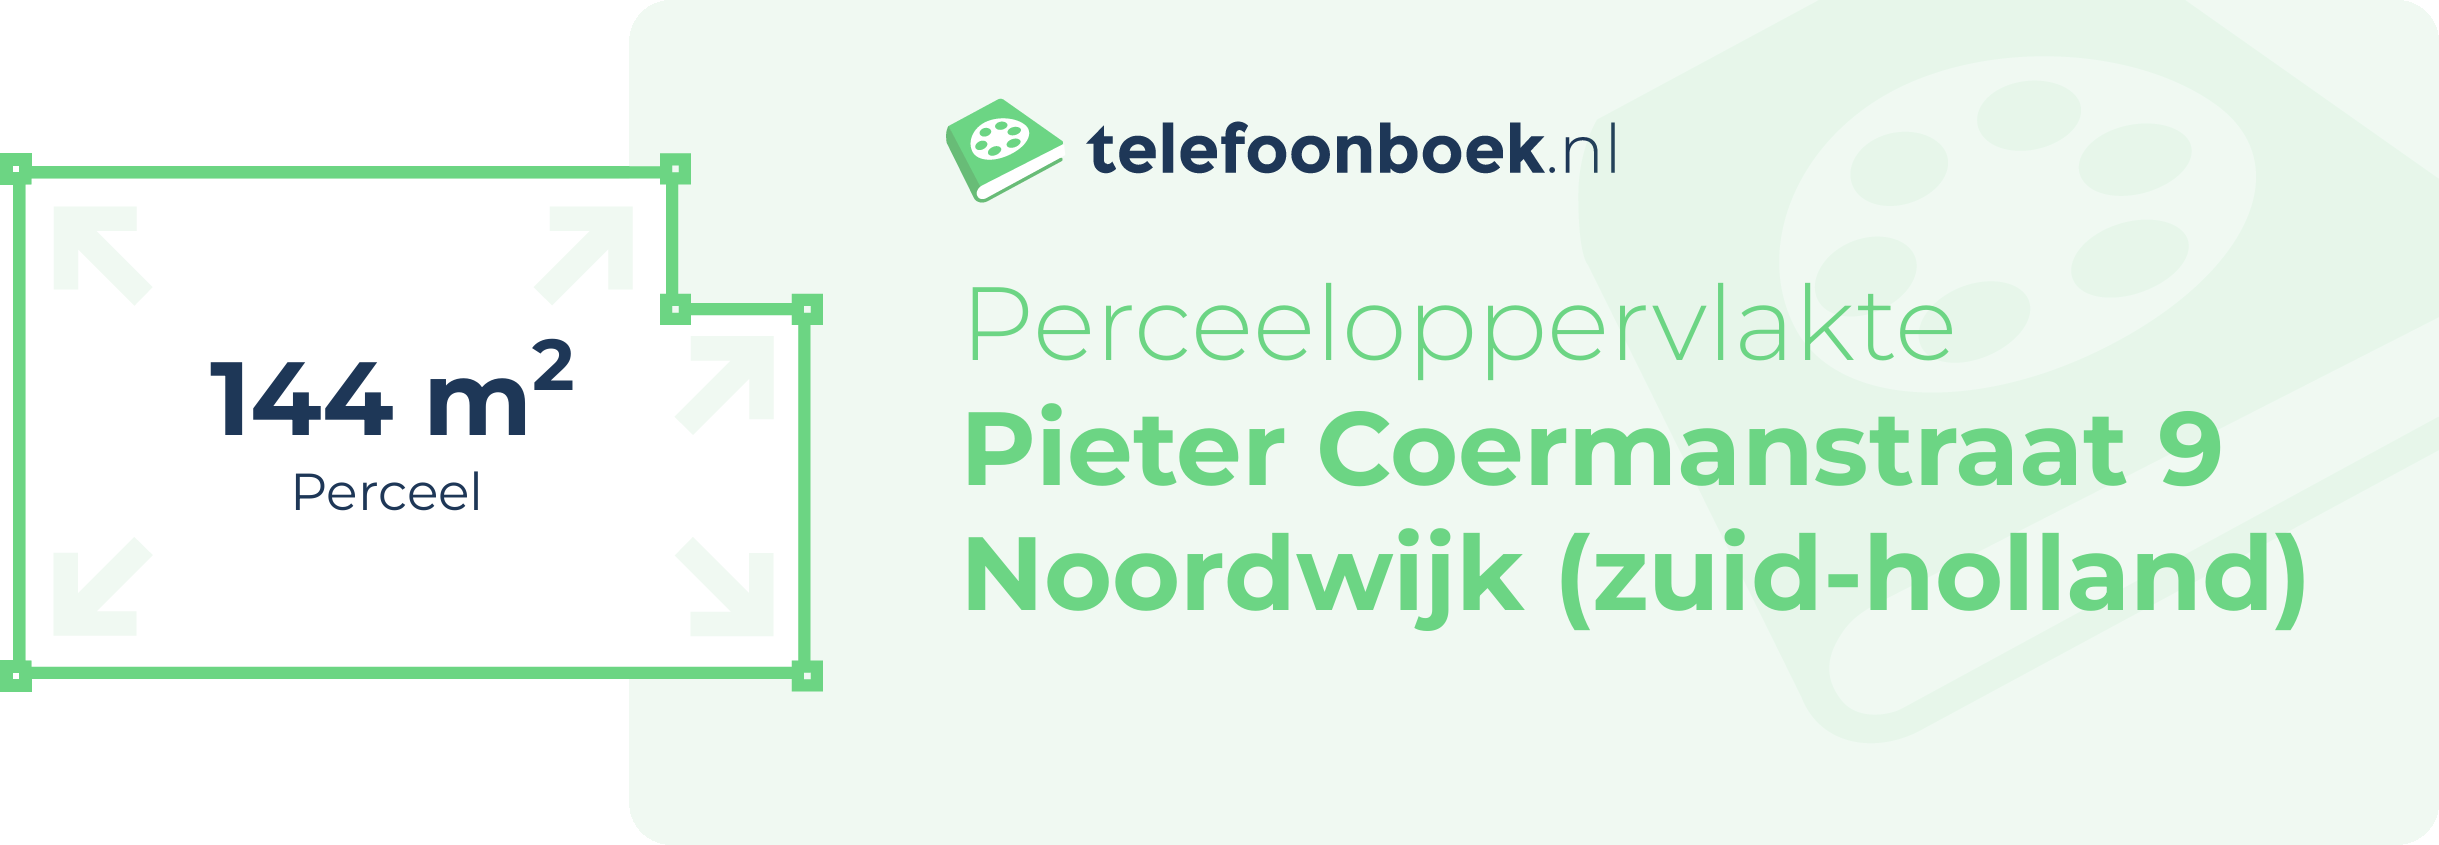 Perceeloppervlakte Pieter Coermanstraat 9 Noordwijk (Zuid-Holland)